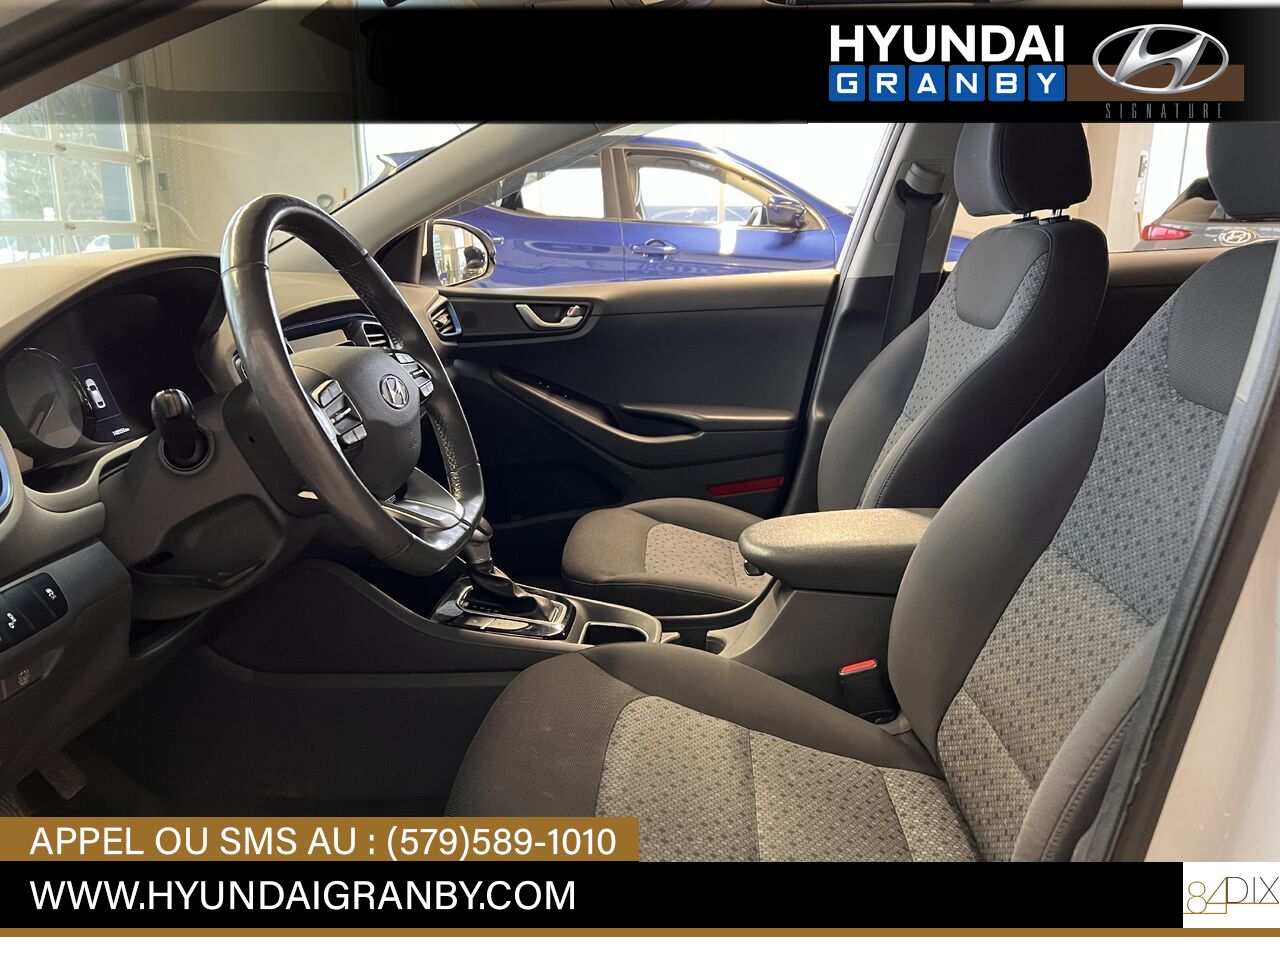 Hyundai Ioniq hybride 2017 Granby - photo #7